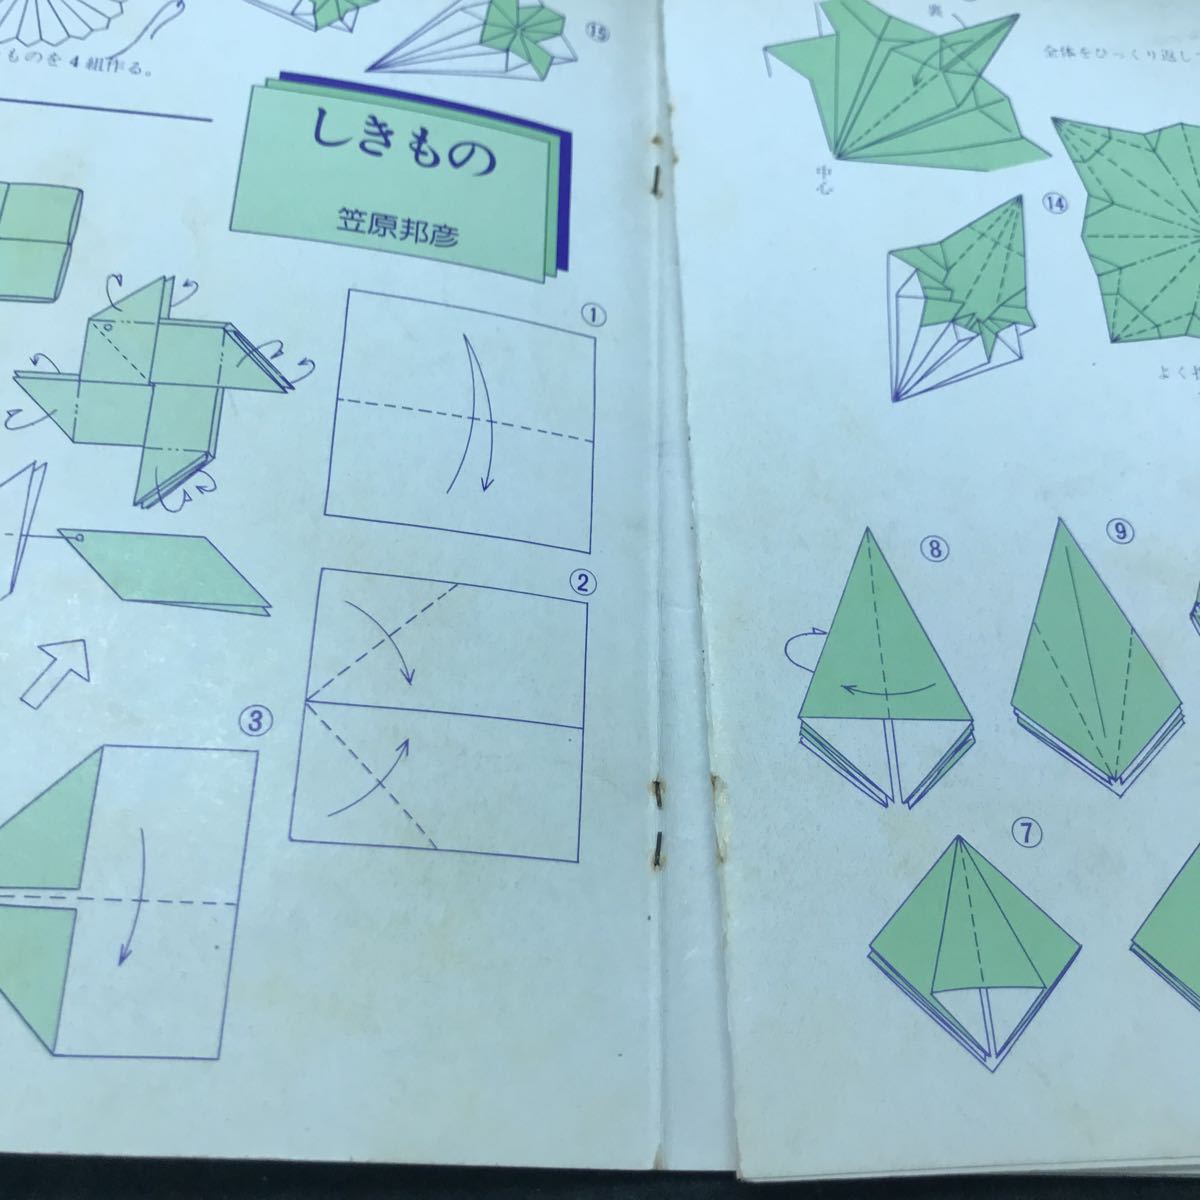 b-542 ママと子供の折り紙工作シリーズ やさしい折り紙 株式会社講談社 1979年発行 ※5_ページわれあり